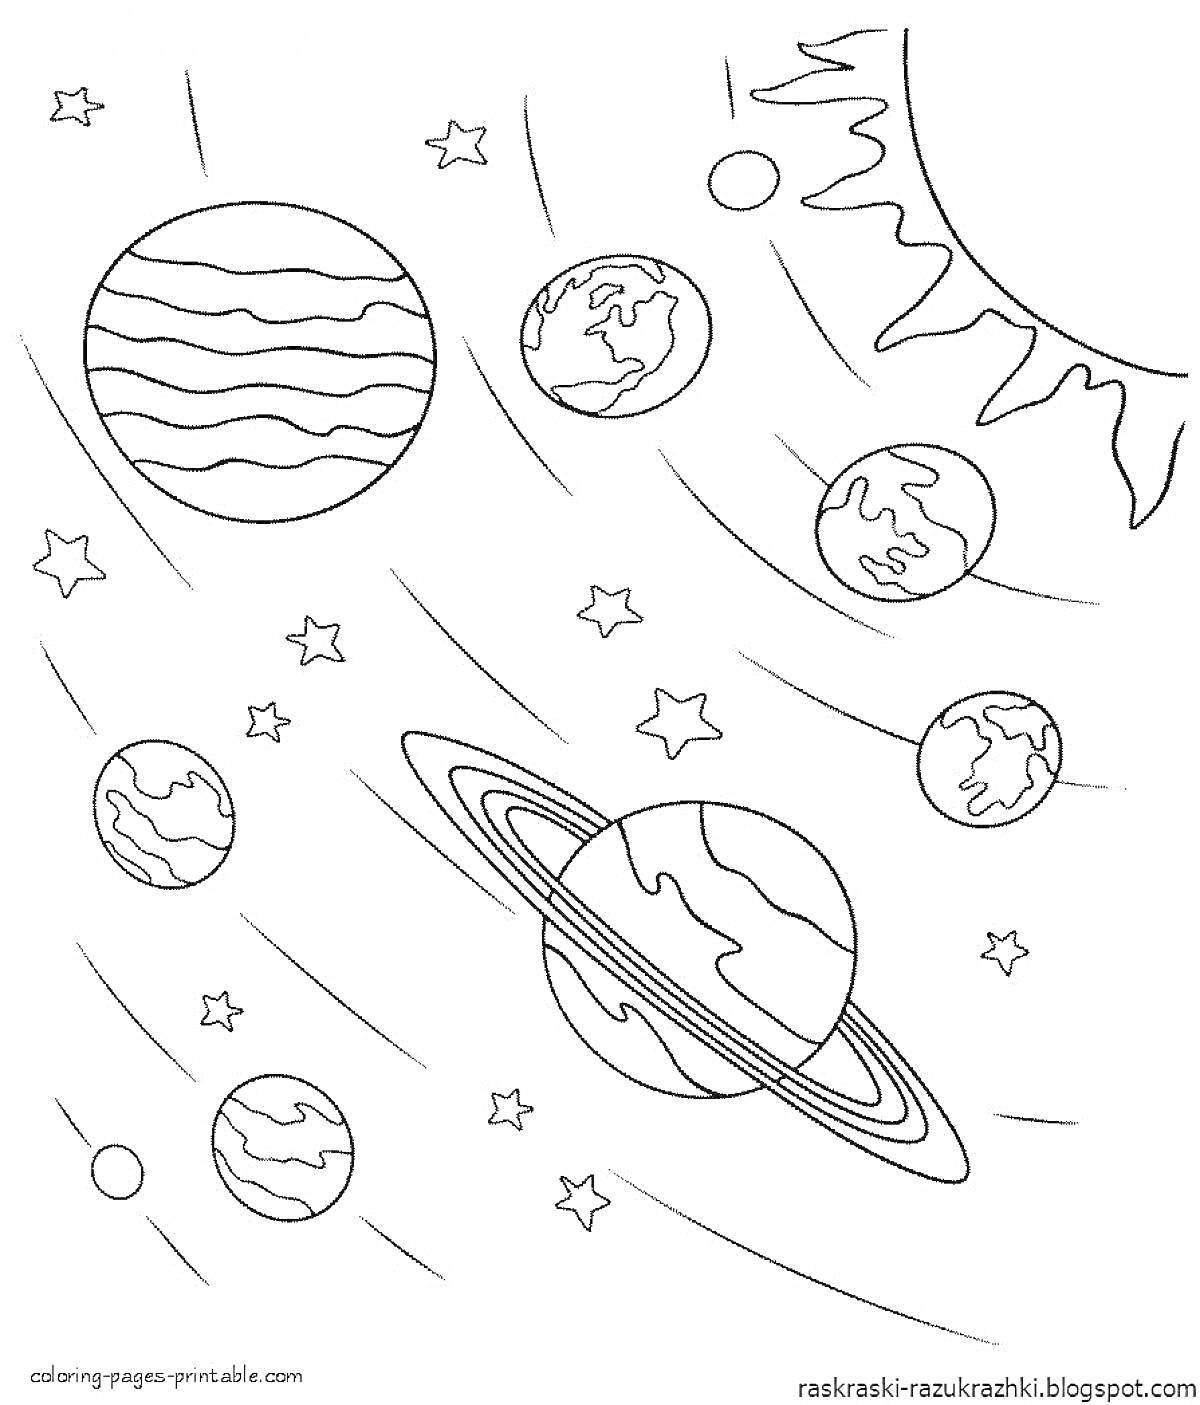 Раскраска Планеты Солнечной системы. Изображение включает планеты с кольцами, солнце, звезды и планеты с континентами.